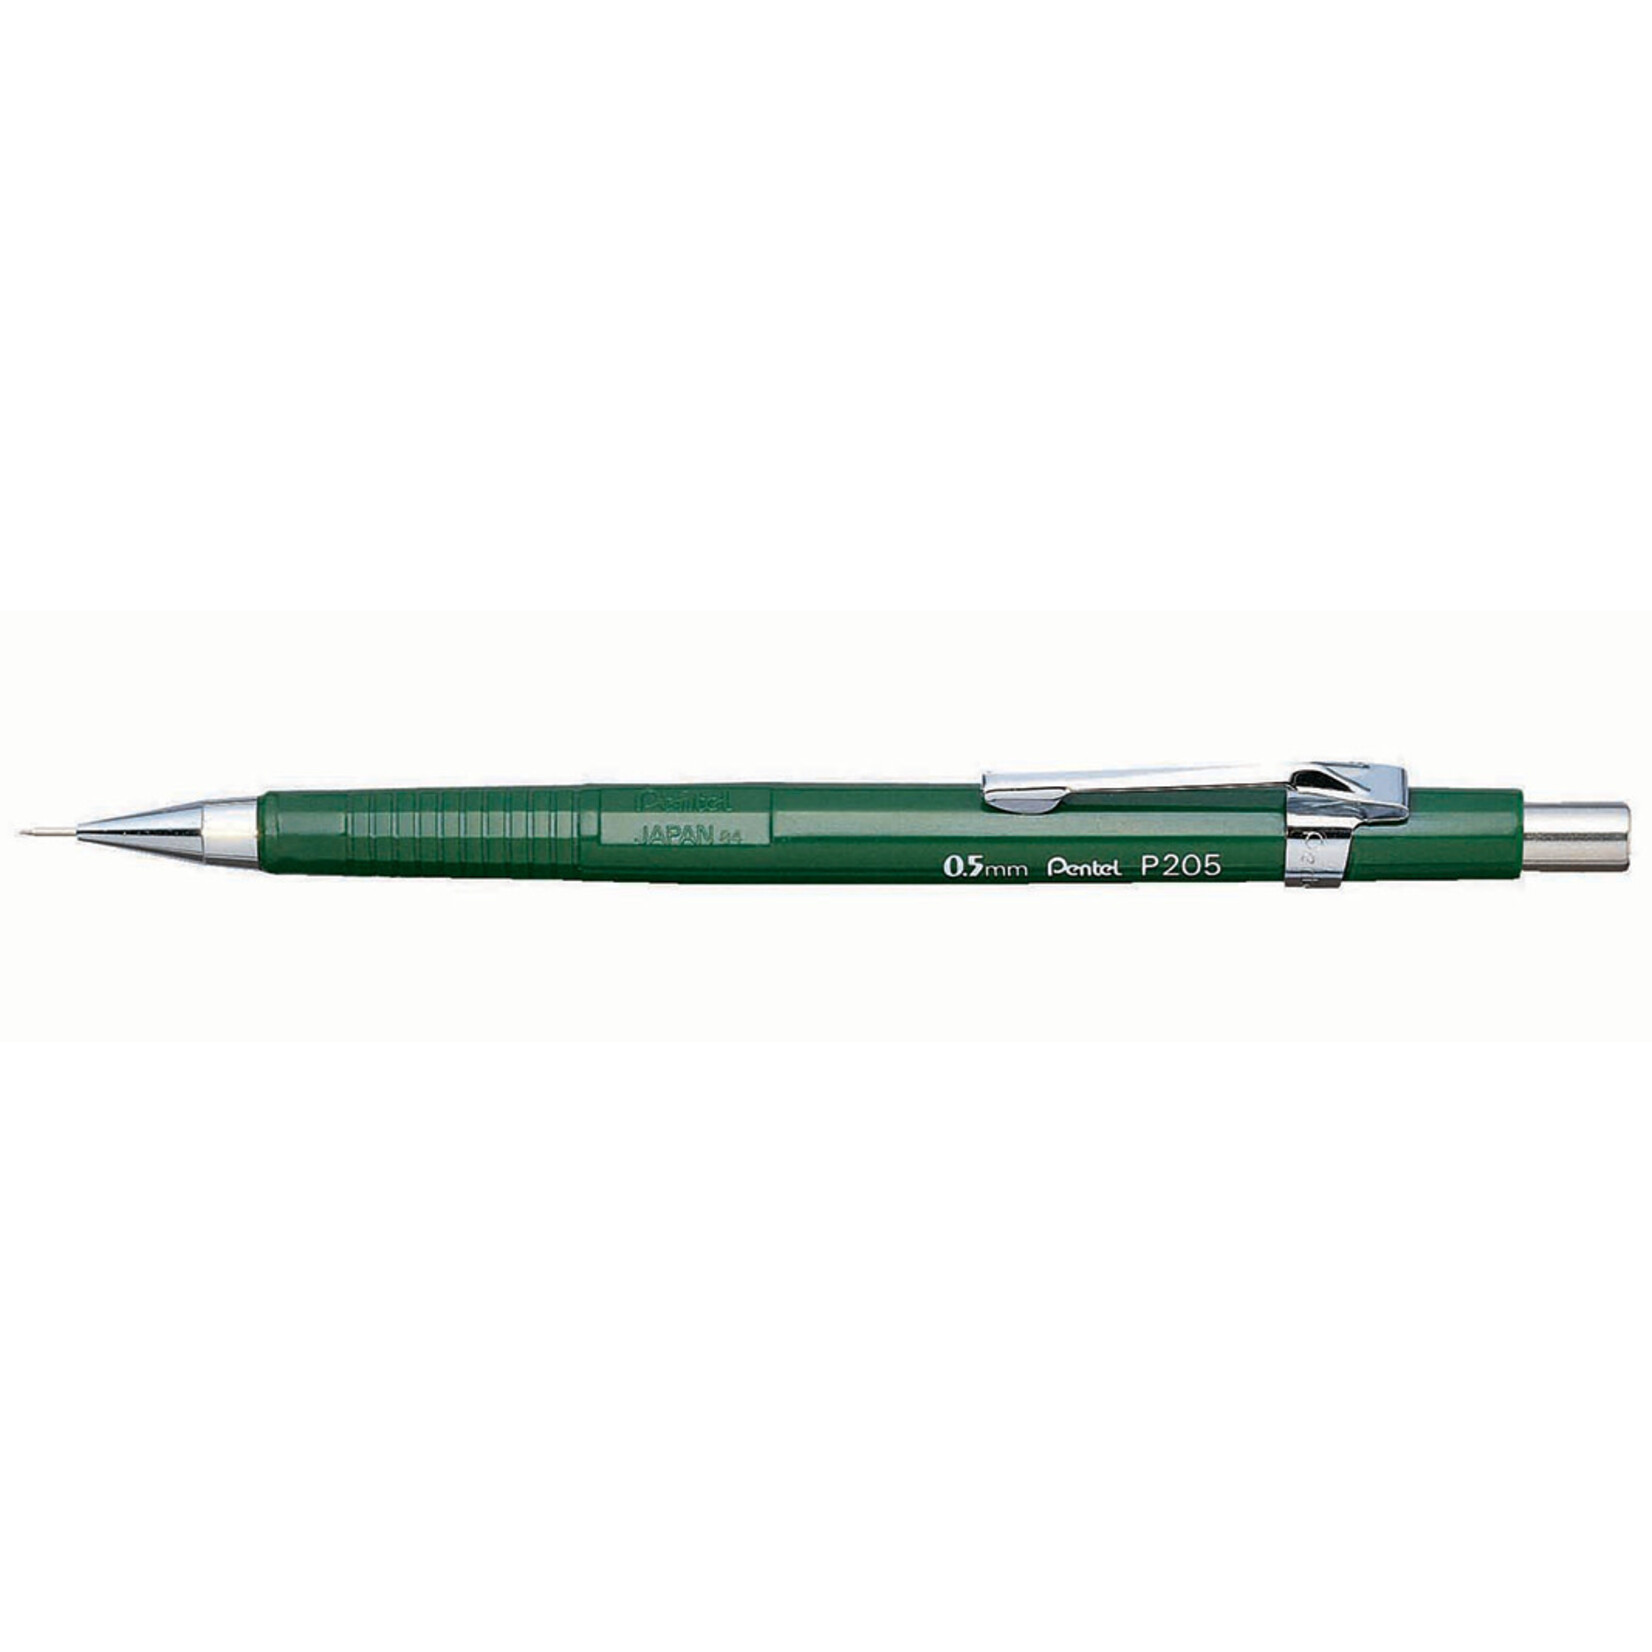 Pentel Sharp Mechanical Pencil .5mm Green